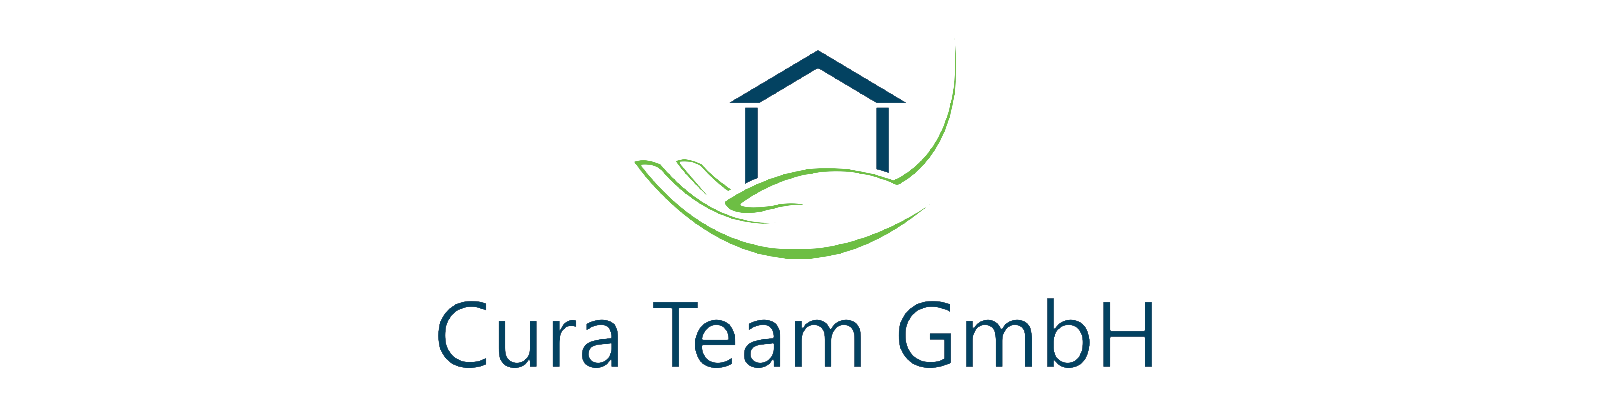 Logo: Cura Team GmbH